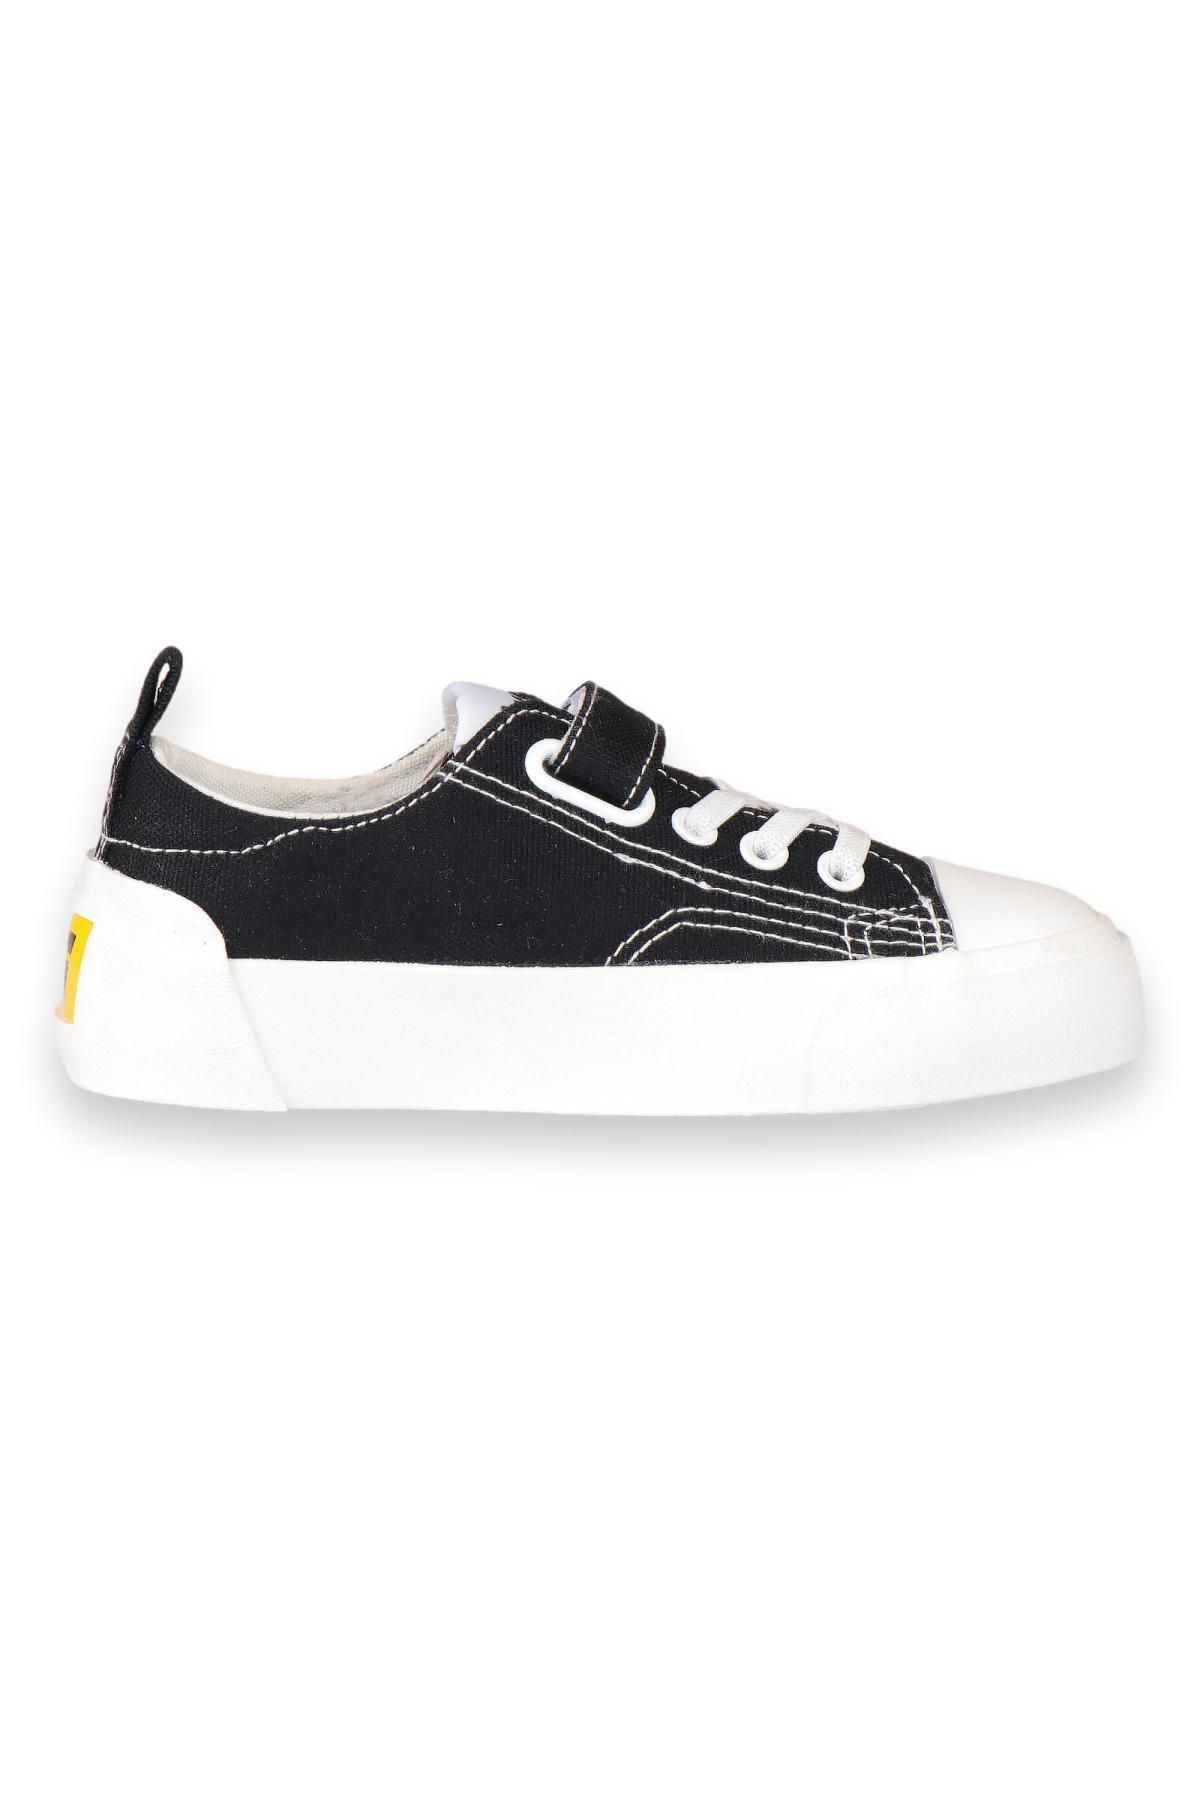 Vicco 346.F24Y141 Filet Keten Siyah-Beyaz Çocuk Spor Ayakkabı